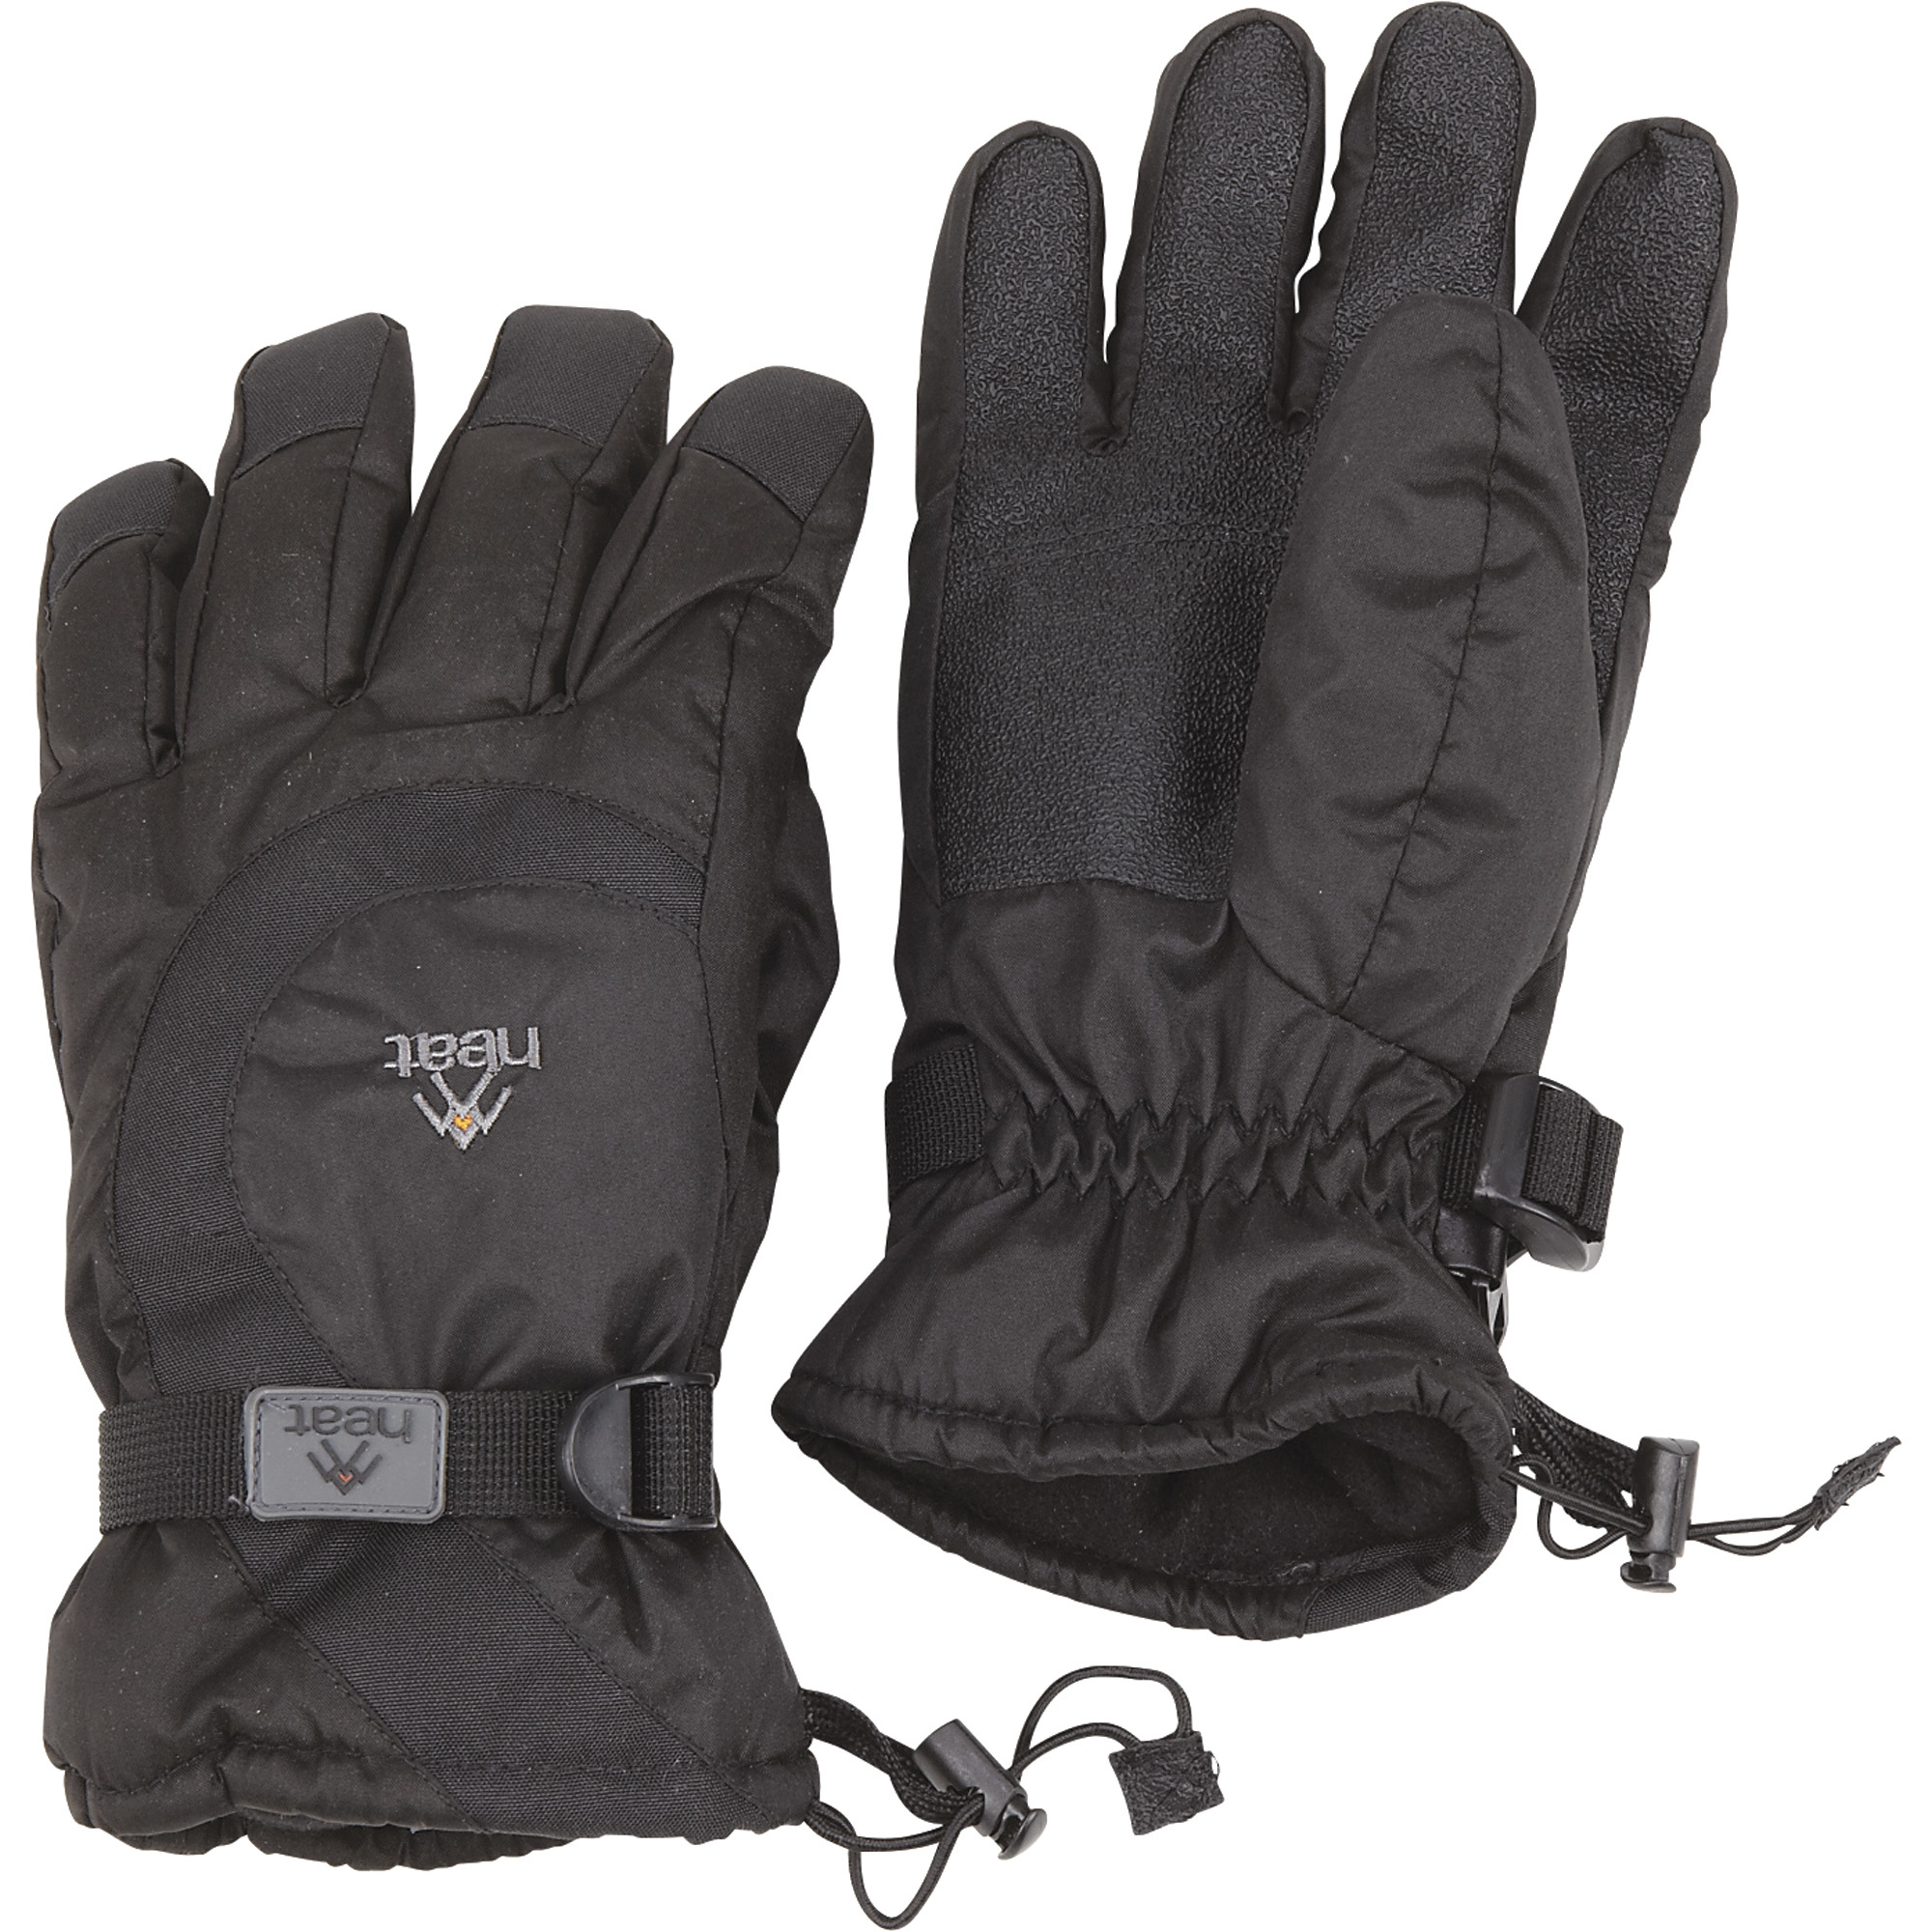 Waterproof Insulated Winter Gauntlet Glove â XL, Model 4GHT24